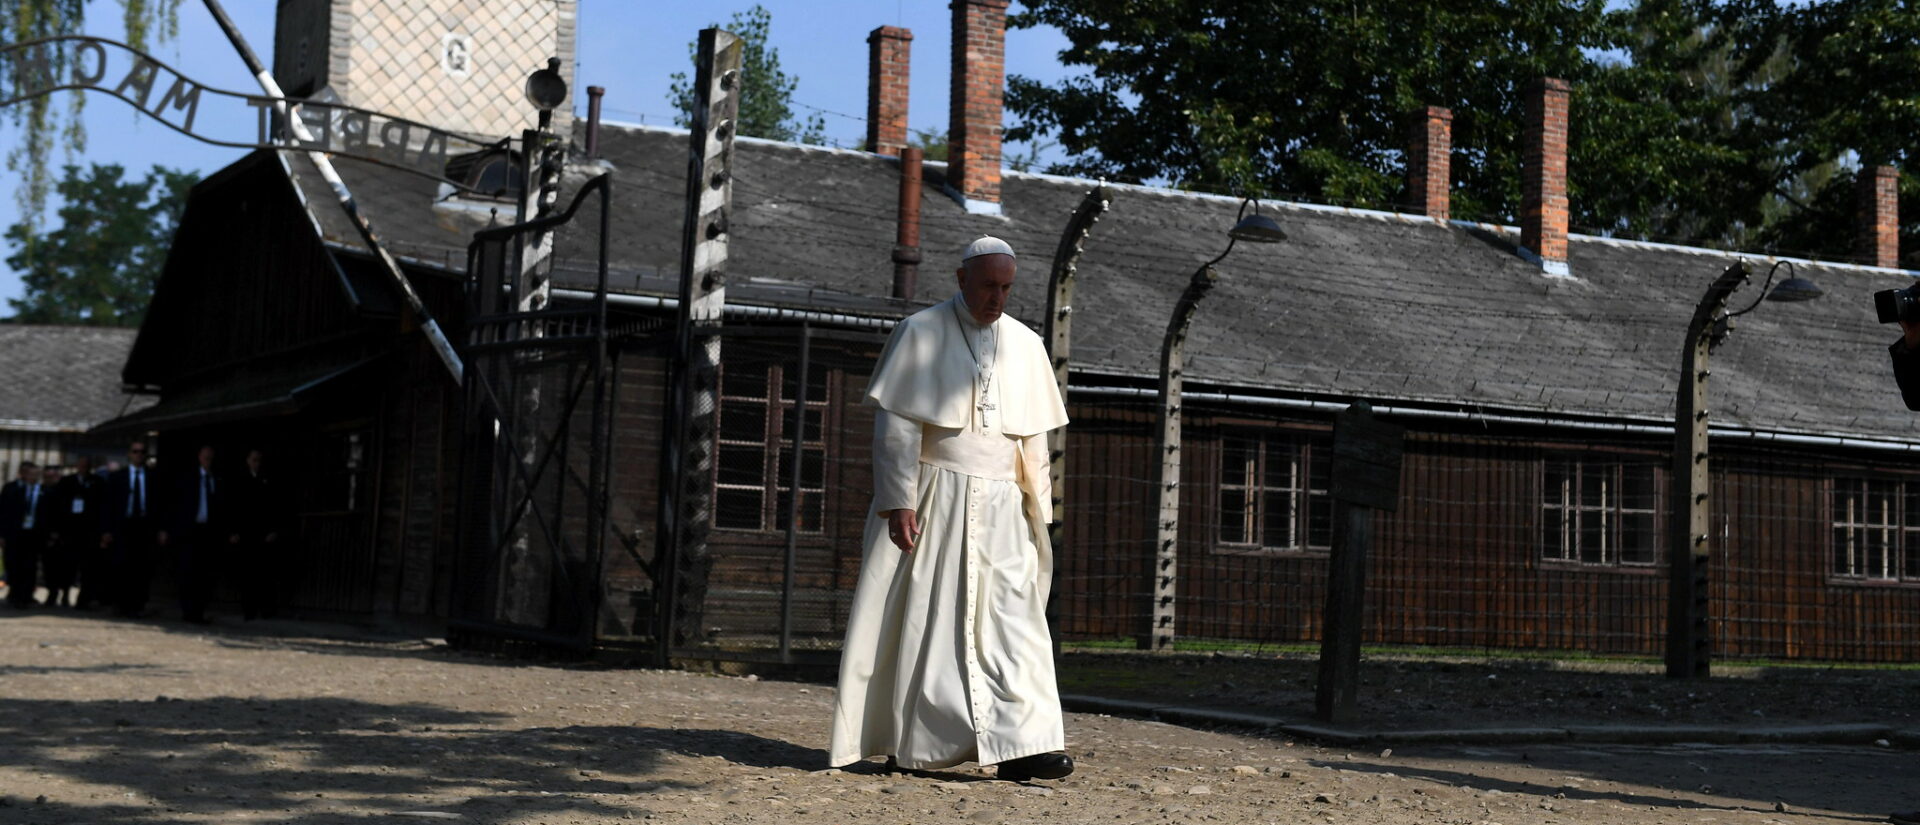 Le pape François en visite à Auschwitz, en juillet 2016 | © Mazur/catholicnews.org.uk/Flickr/CC BY-NC-ND 2.0